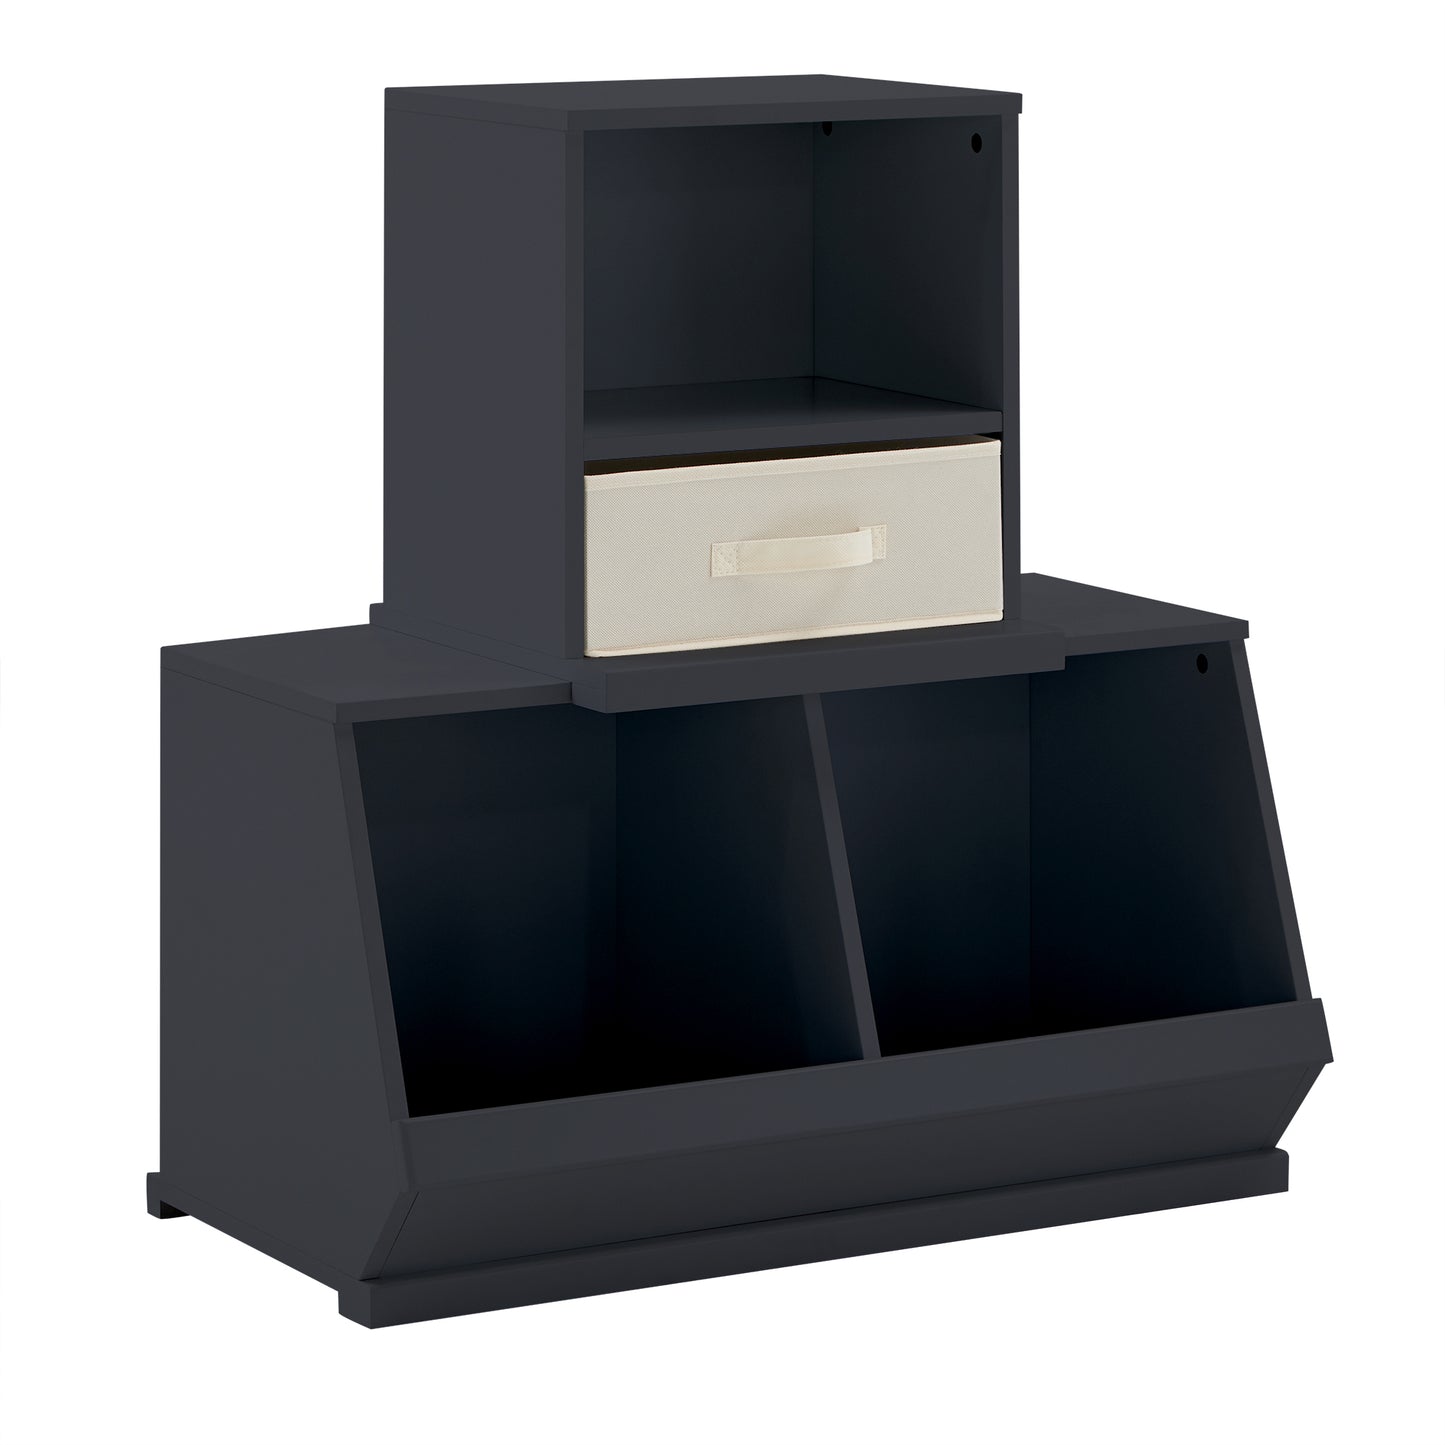 Modular Stacking Storage Bins - Charcoal Black, 1 Box with Drawer